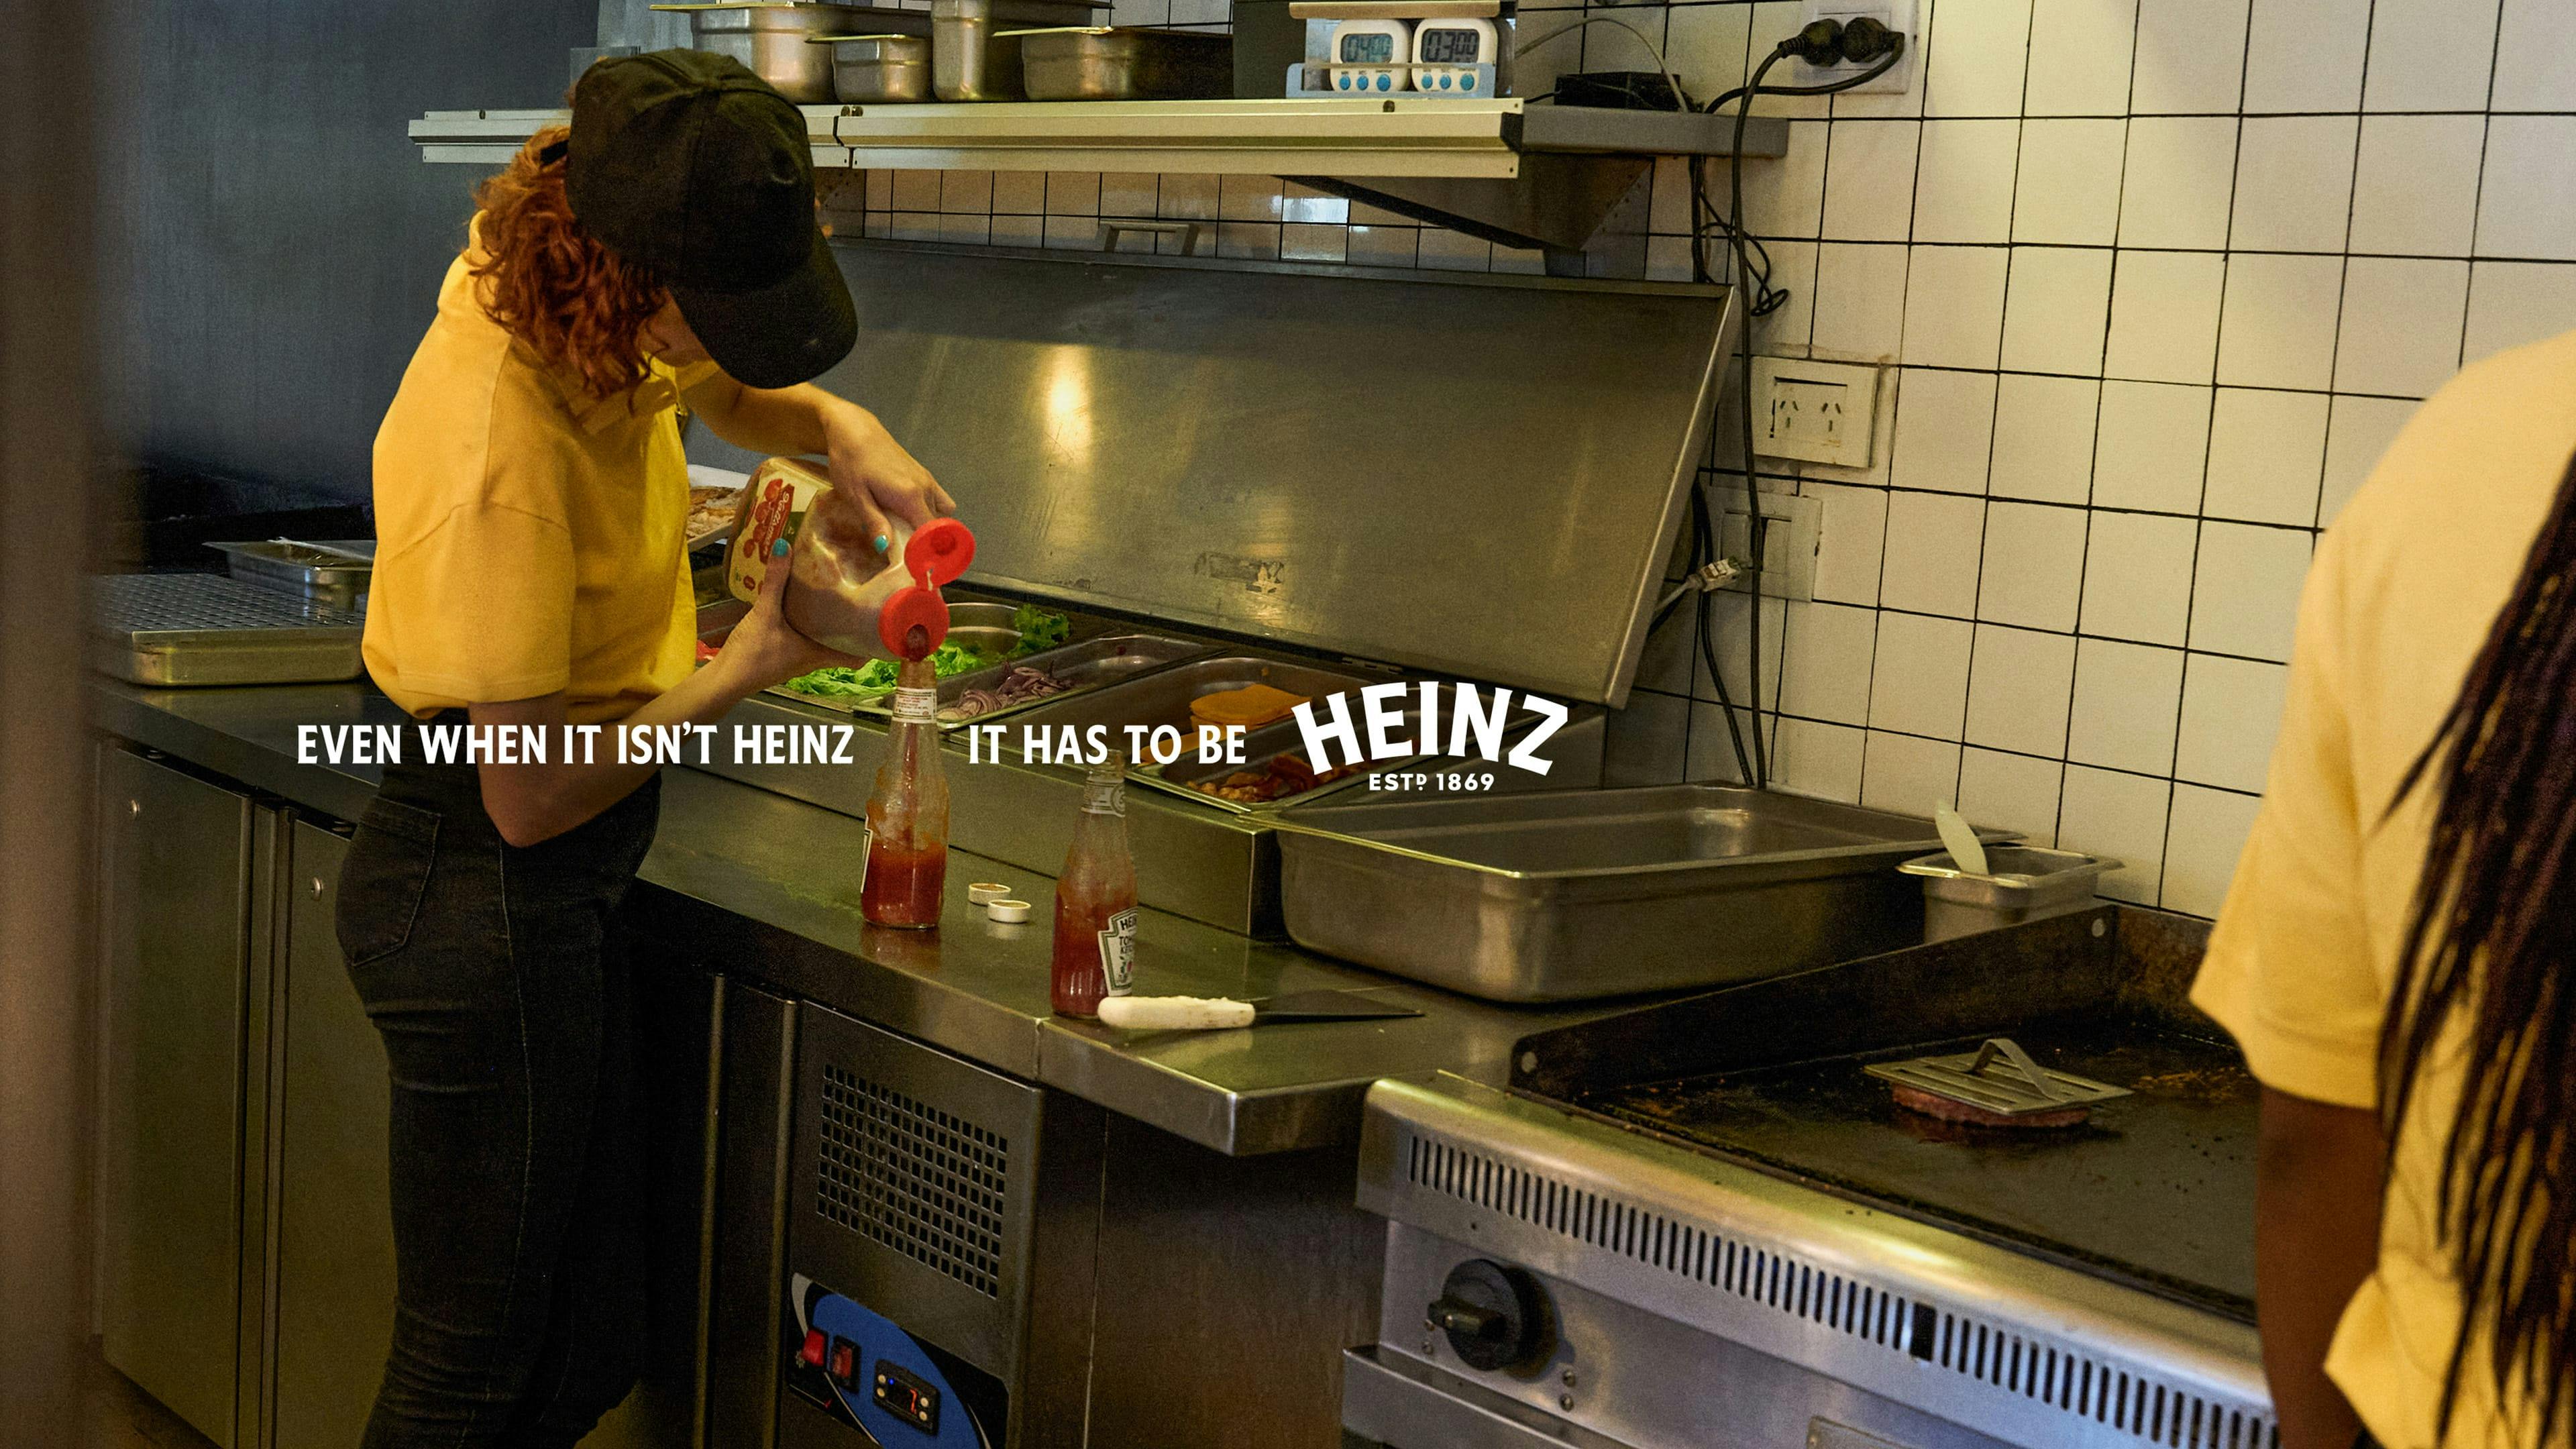 Une personne portant un chandail jaune remplit une bouteille de ketchup Heinz à partir d’une bouteille d’une autre marque de ketchup dans une cuisine de restaurant. 